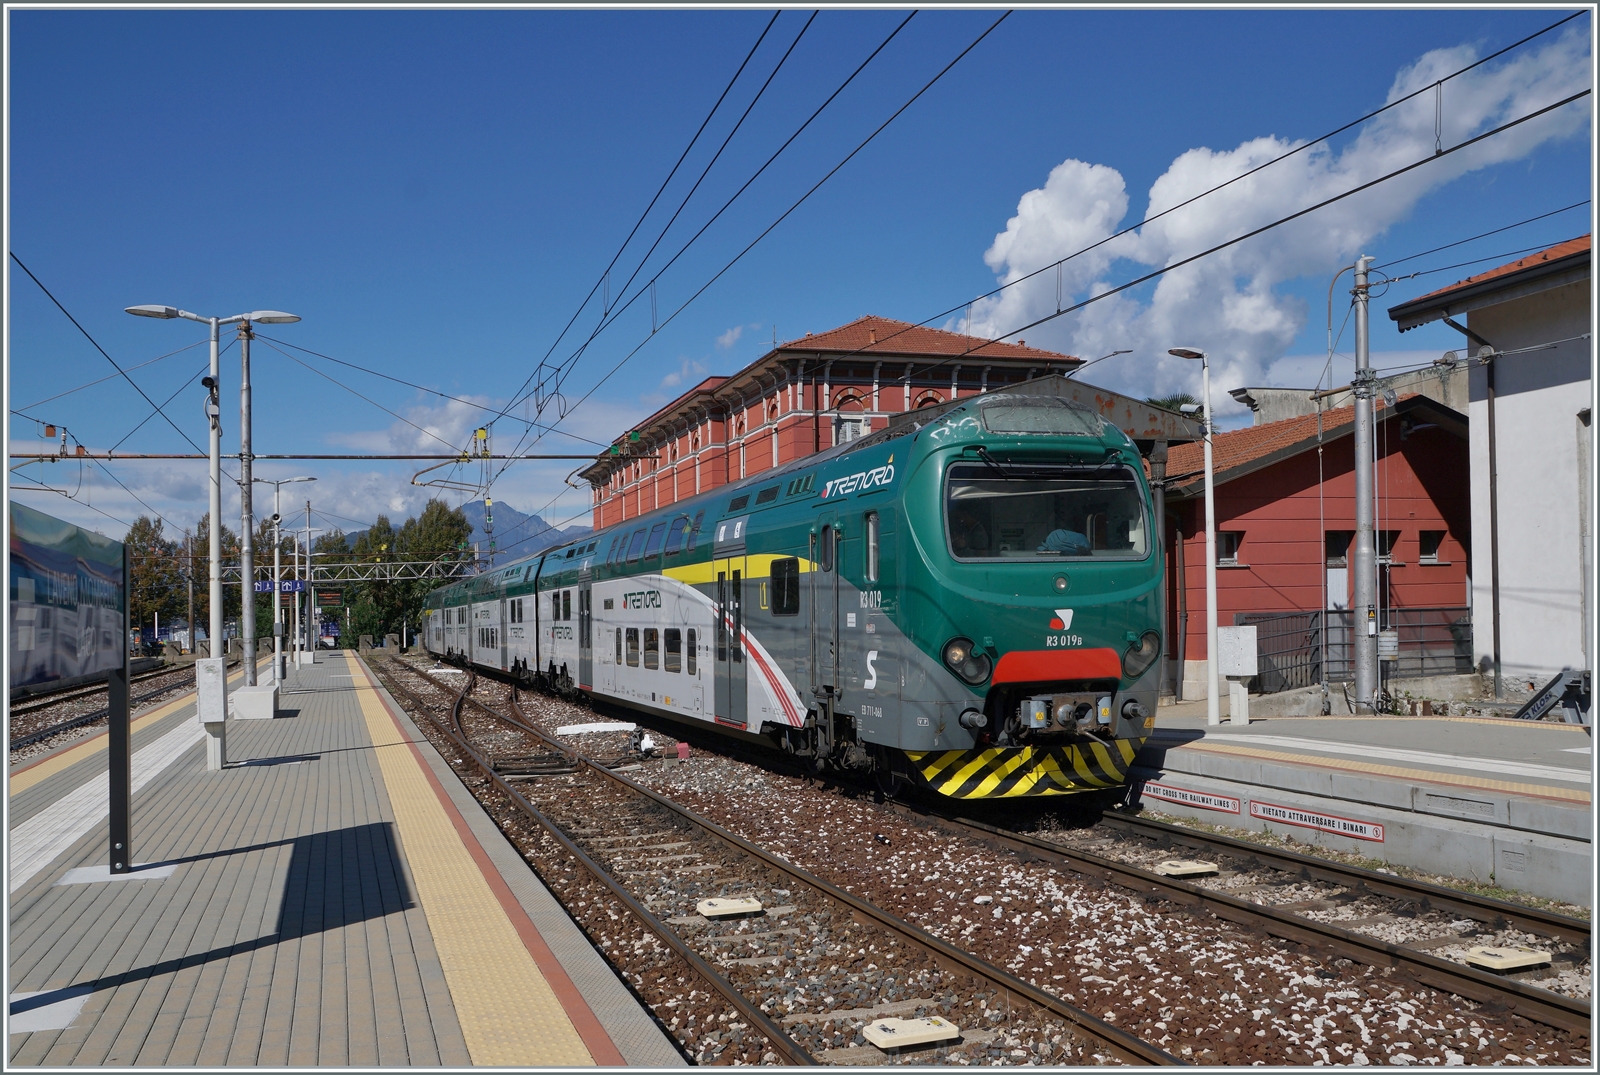 Eine wunderschöne Zeit verachten wir in Italien, wo es endlich Meer-Ferien gab; dafür aber kaum Bahnbilder; denn wir hatten ja Ferien...

Im Bahnhof Laveno Mombello Lago wartet der Trenord ALe 711 068 (94 83 4 711 068-6 I-TN) als Regio 46 auf die Rückfahrt nach Milano Cadorna. 

27. September 2022